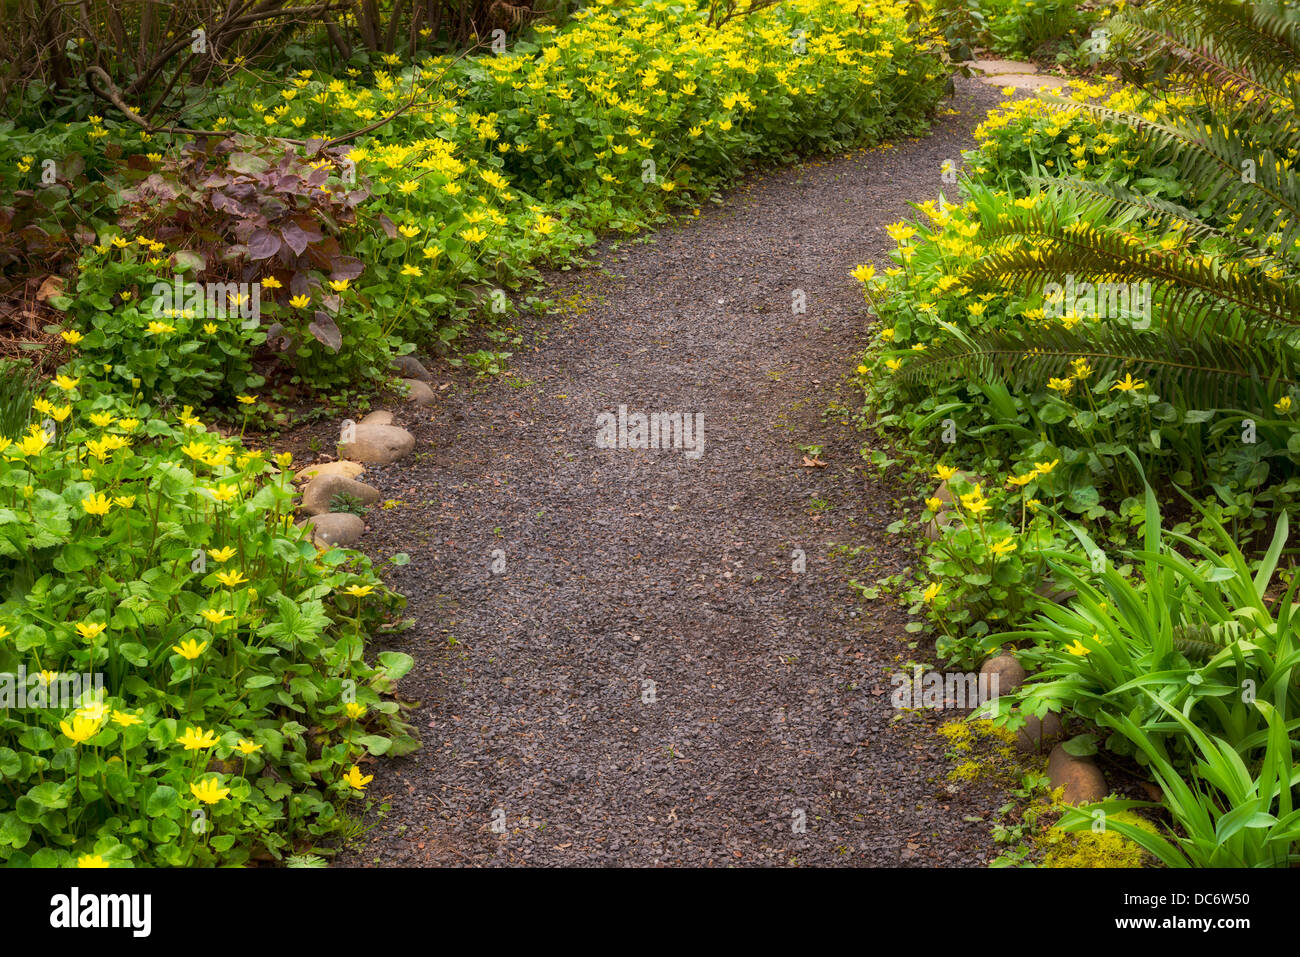 USA, Oregon, Marion county, Garden path Stock Photo